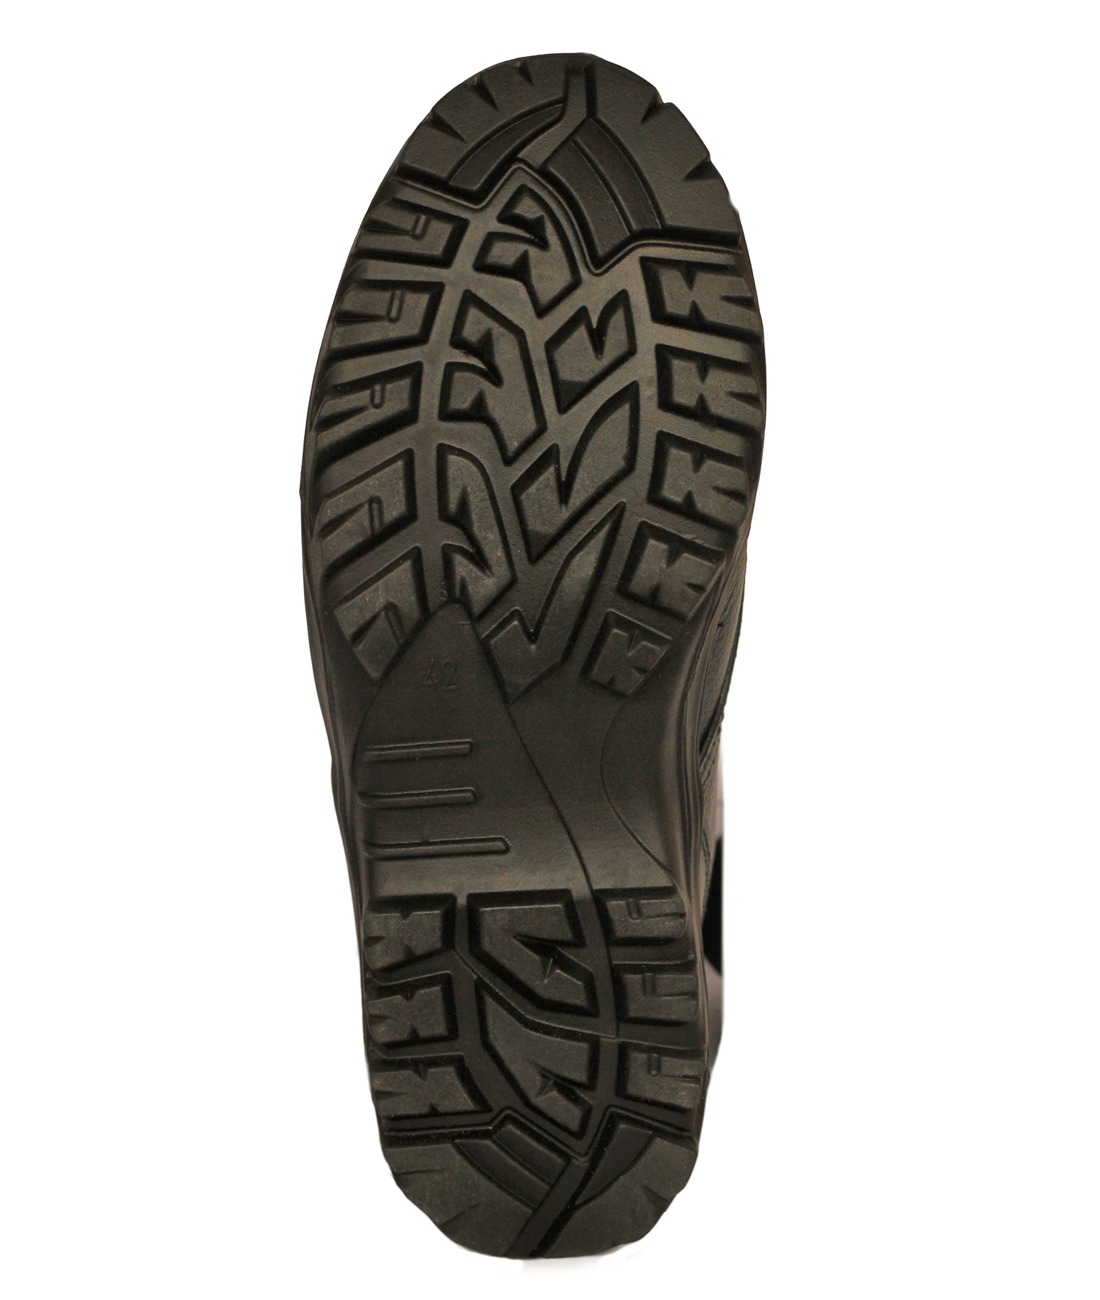 Ботинки с высоким берцем  "Ратник-Зима" на натуральном меху, подошва резина (в уп.8 пар). Фото N3